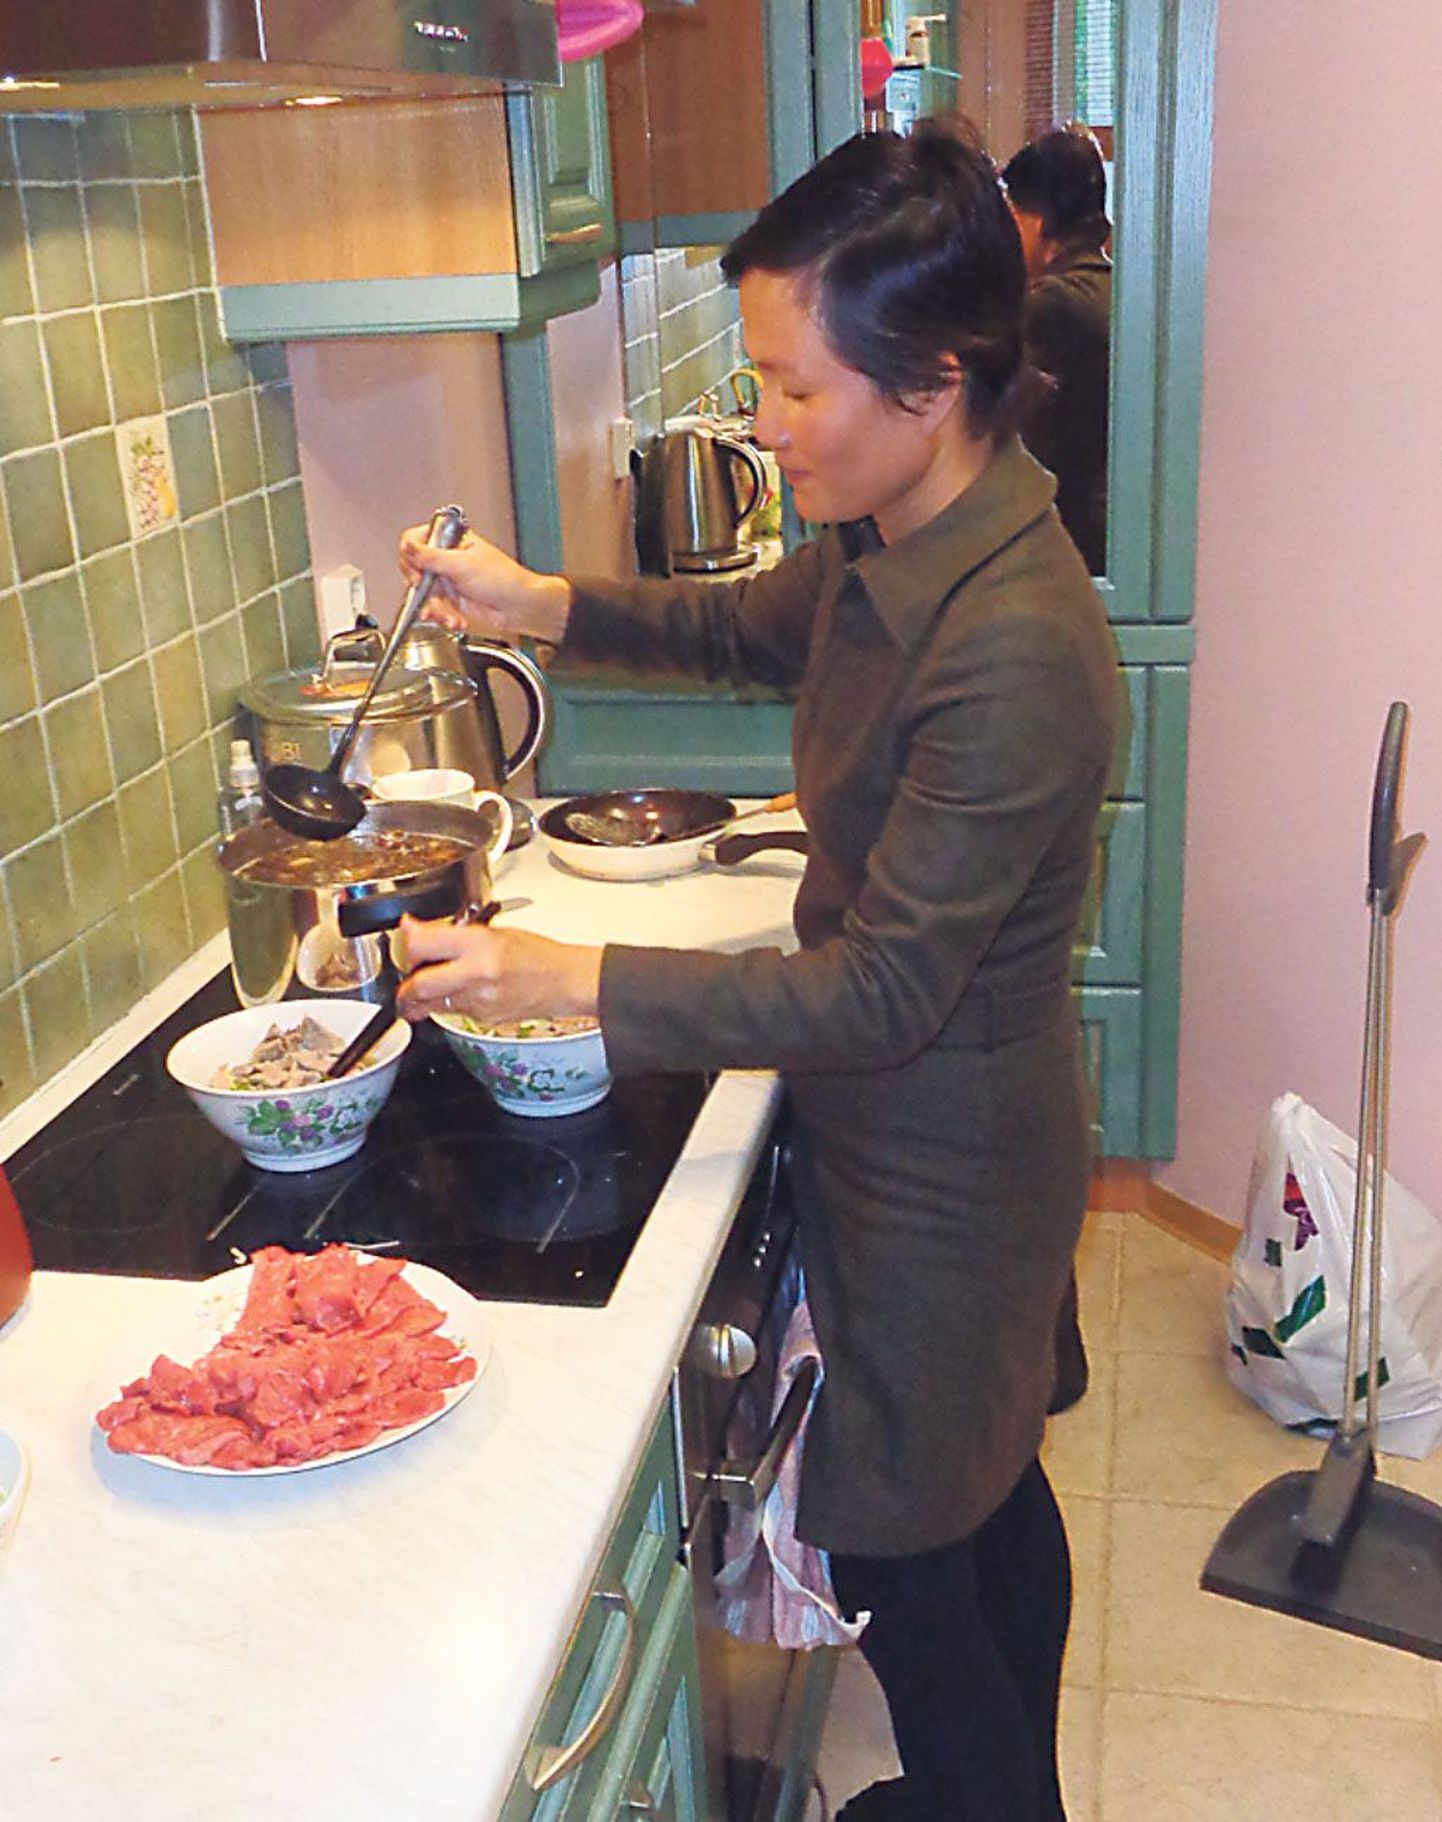 Vietnamlanna My armastas igal võimalusel köögis toimetada ja näidata, mida süüakse tema kodumaal.